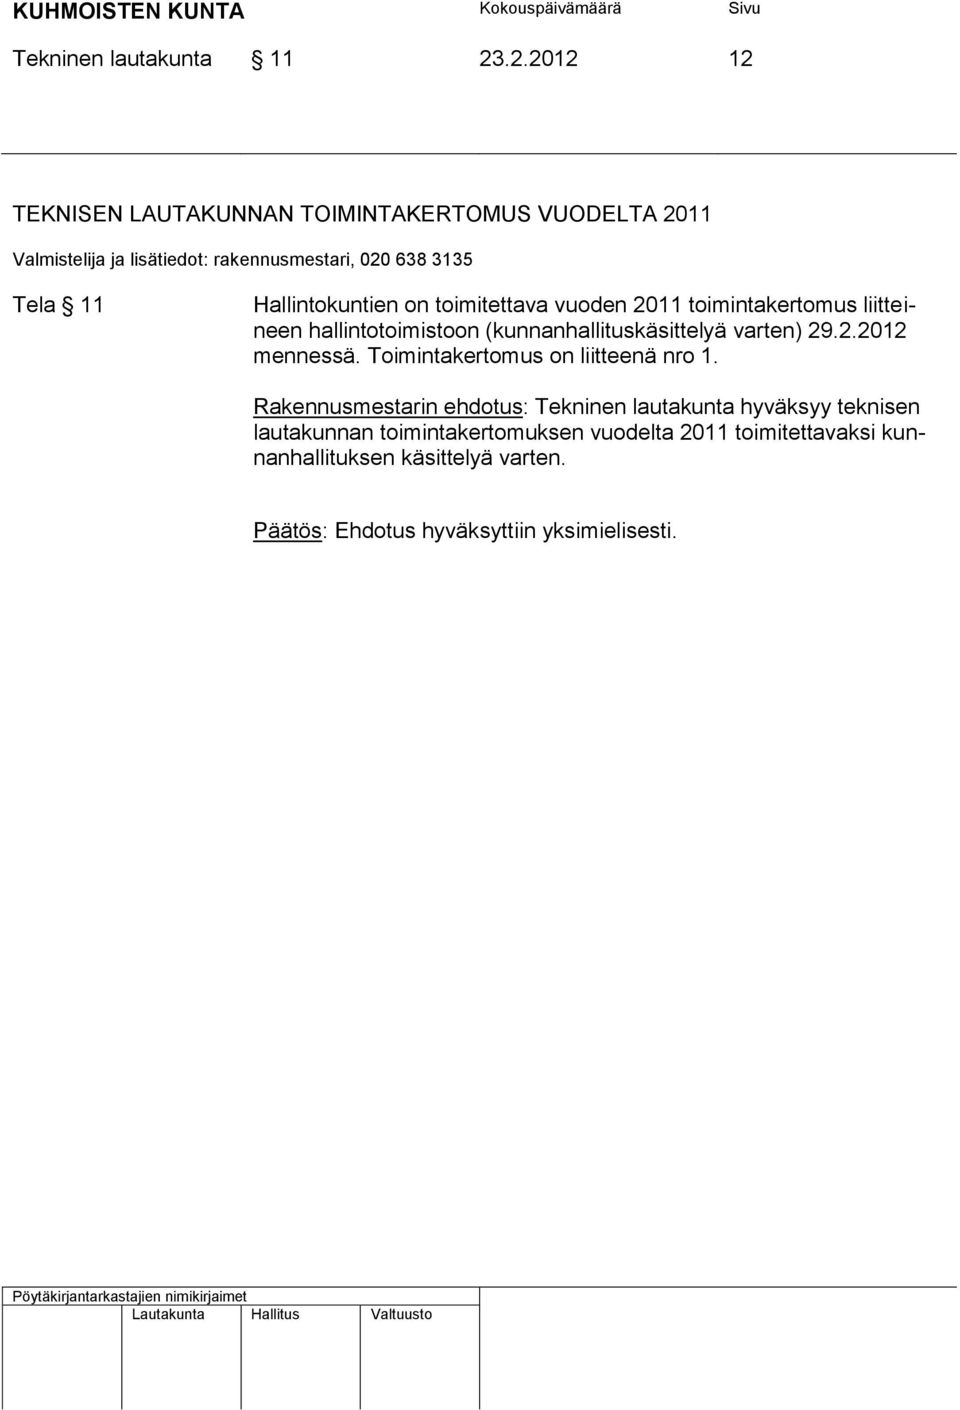 2011 toimintakertomus liitteineen hallintotoimistoon (kunnanhallituskäsittelyä varten) 29.2.2012 mennessä.